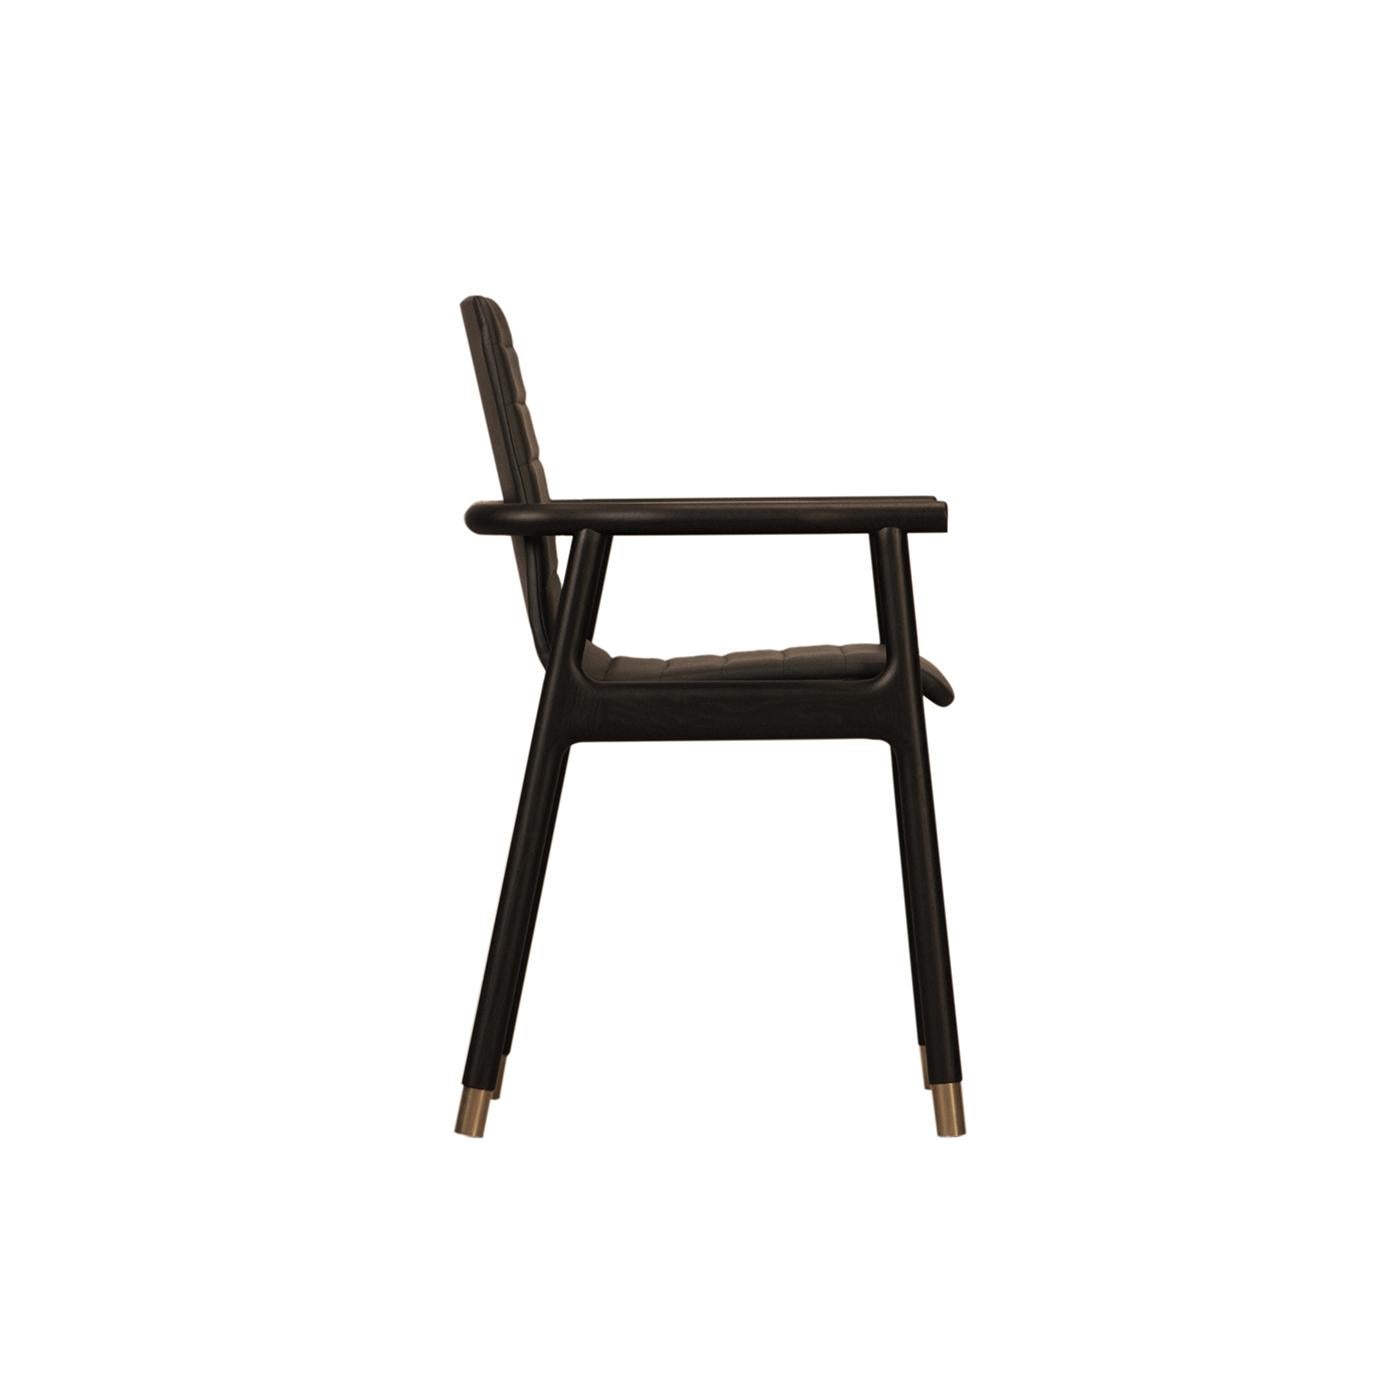 Dieser geschliffene Sessel ist eine Synthese aus Komfort und Raffinesse. Das Gestell aus schwarz lackiertem Eschenholz besteht aus vier leicht geneigten Beinen, die den gepolsterten Sitz und die Rückenlehne tragen, die beide mit einer Polsterung mit